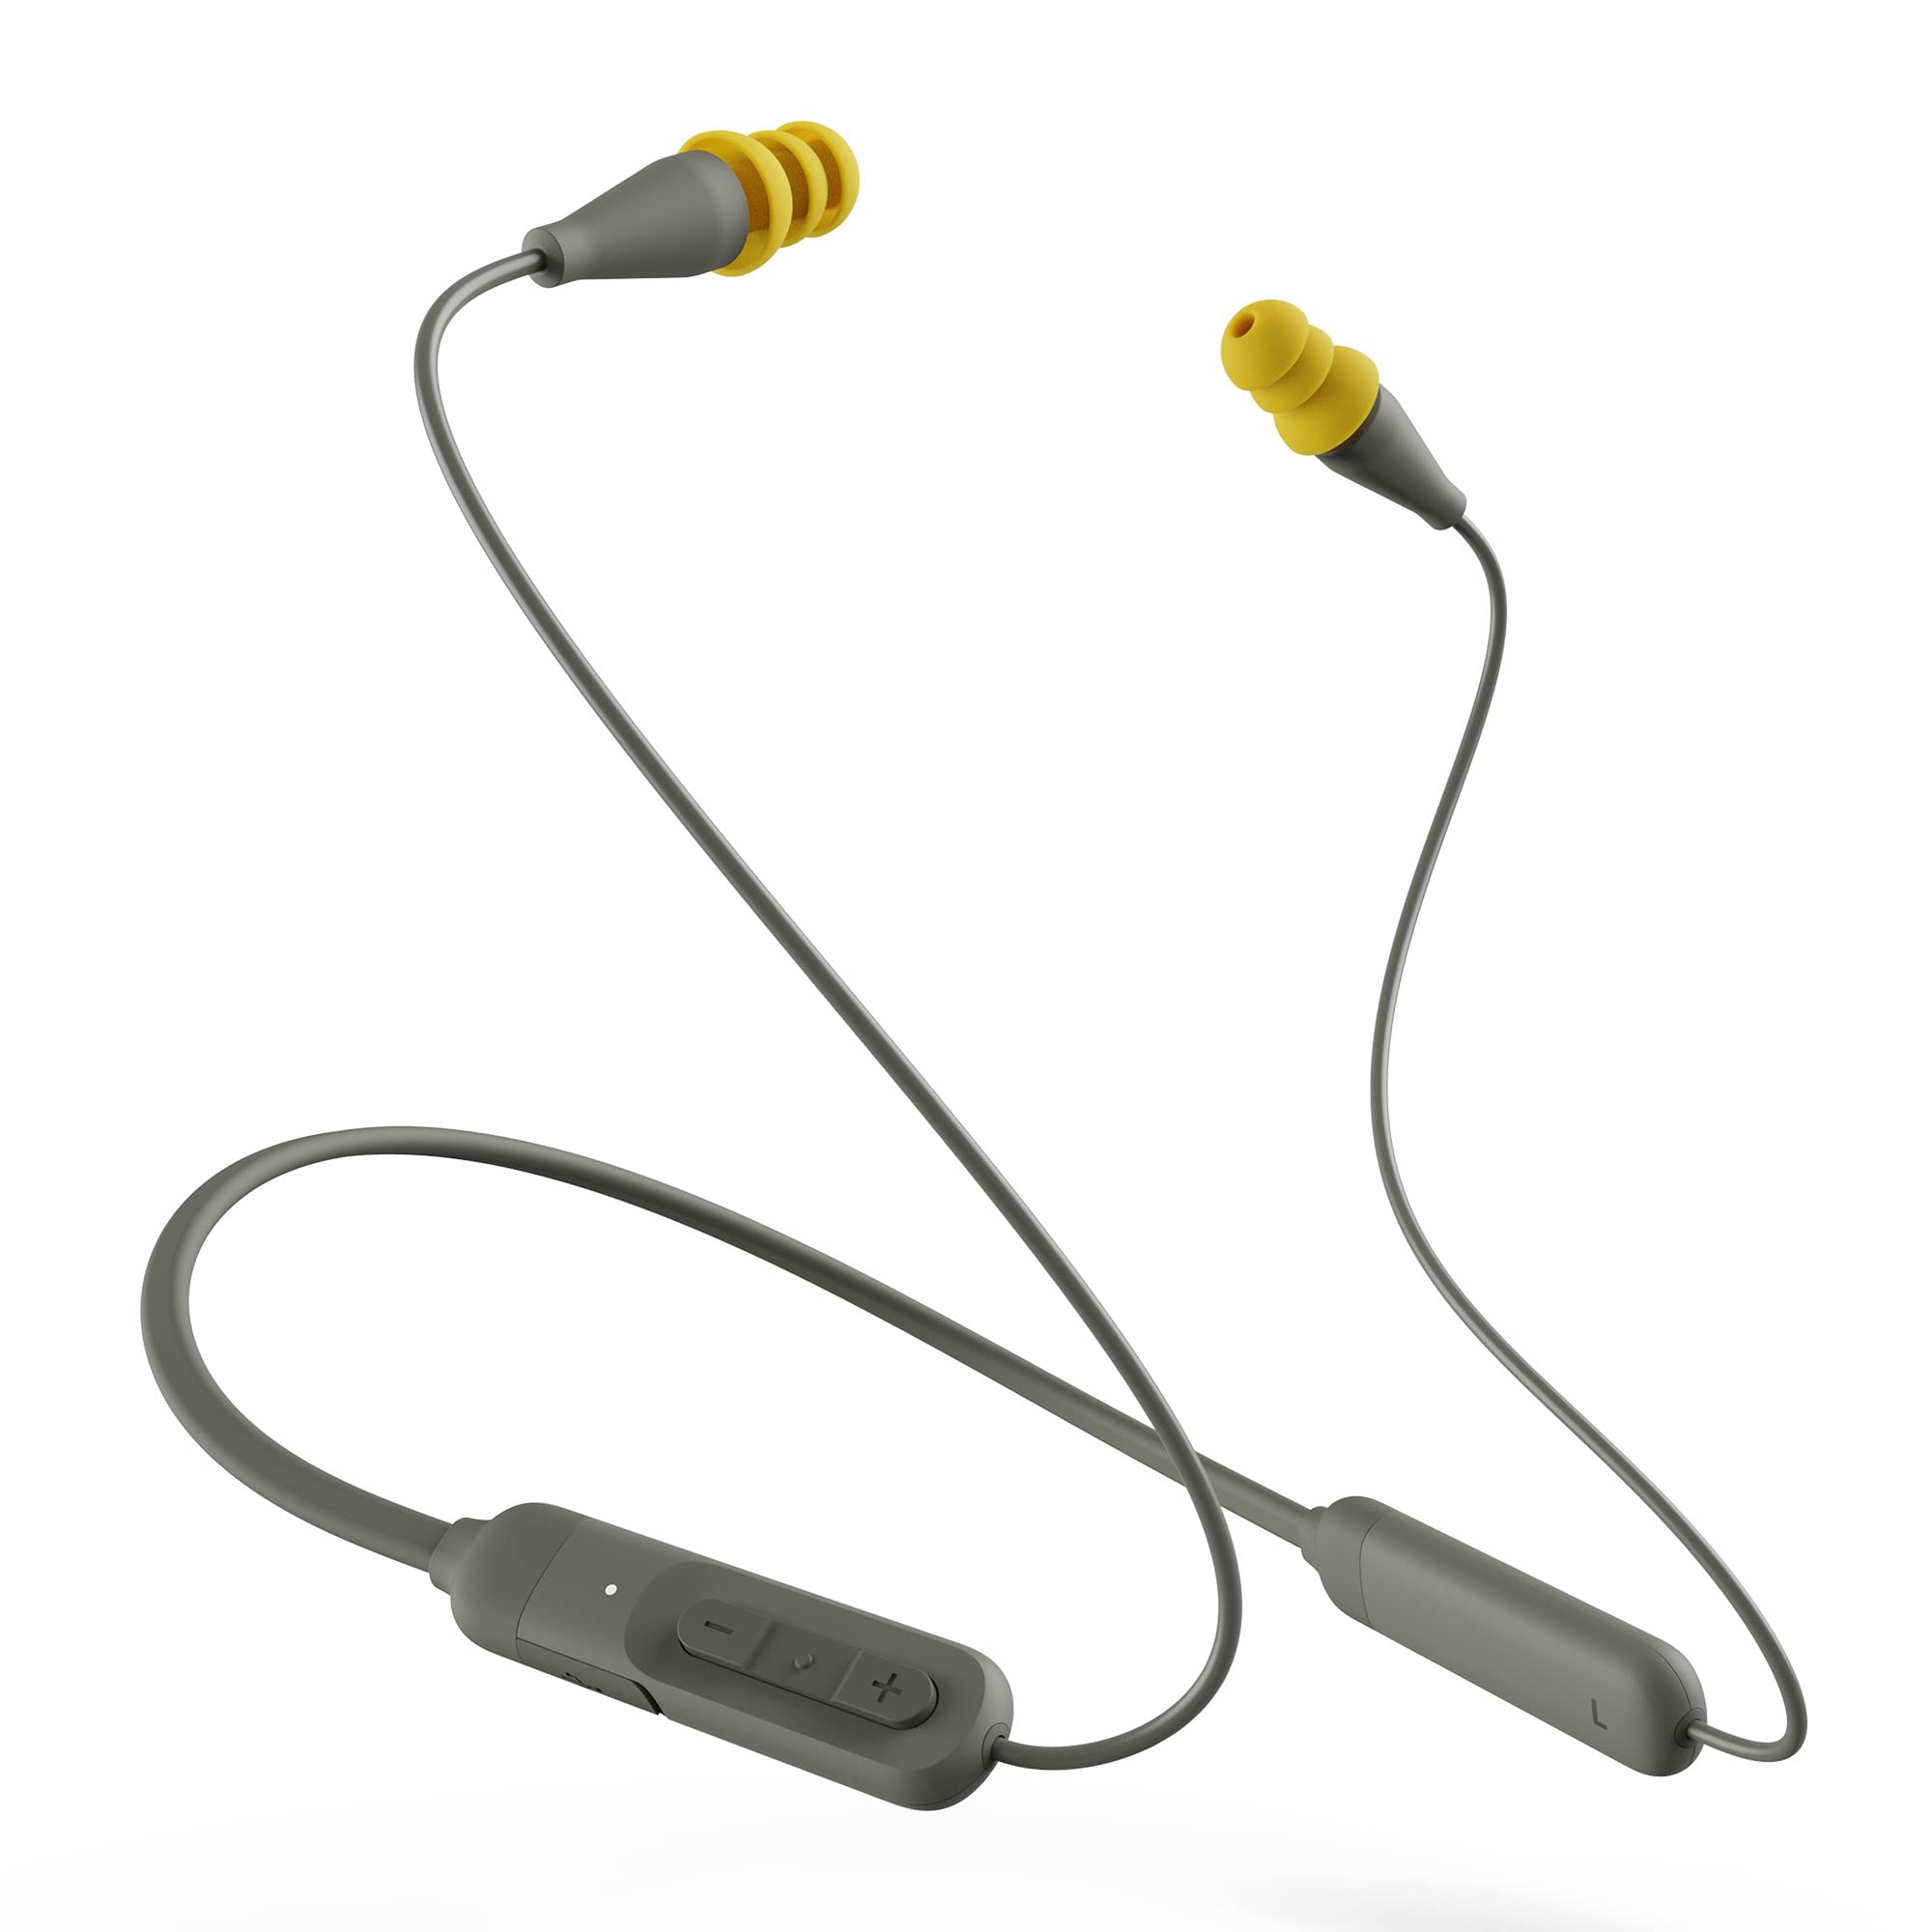 Elgin Ruckus Discord Słuchawki douszne Bluetooth | Bezprzewodowe słuchawki douszne zgodne z OSHA: izolujące słuchawki douszne